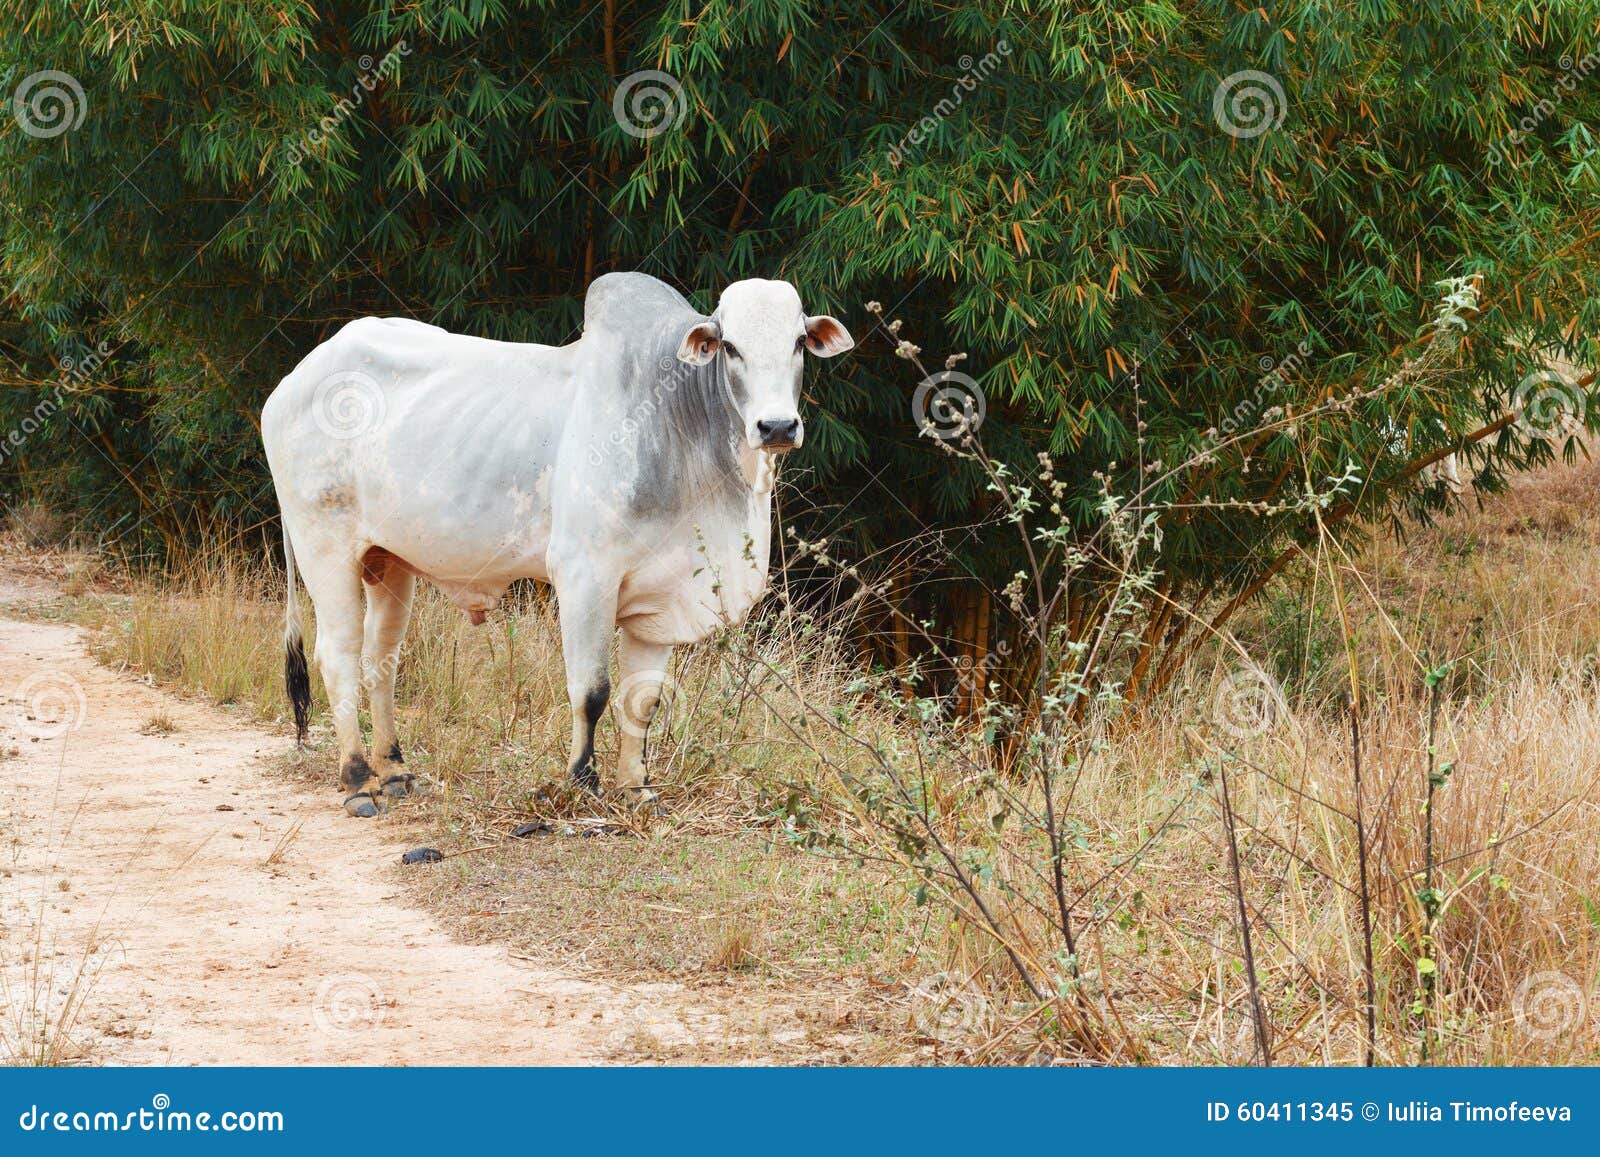 brazilian beef cattle bull - nellore, white cow